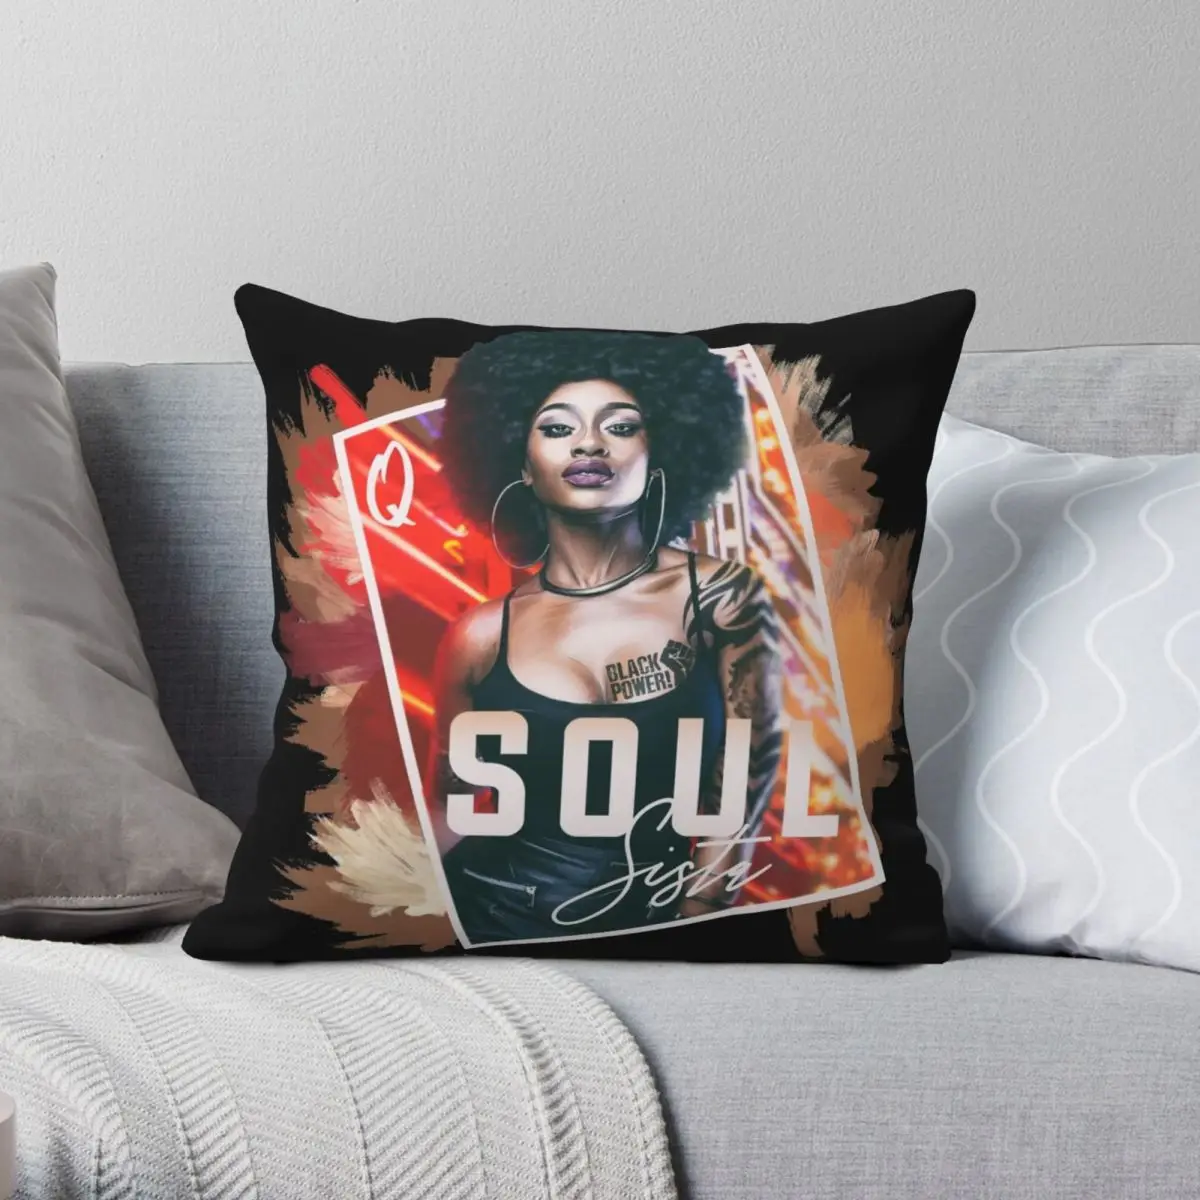 

Queen Soul Sista Square Pillowcase Polyester Linen Velvet Creative Zip Decor Pillow Case Sofa Seater Cushion Cover 18"